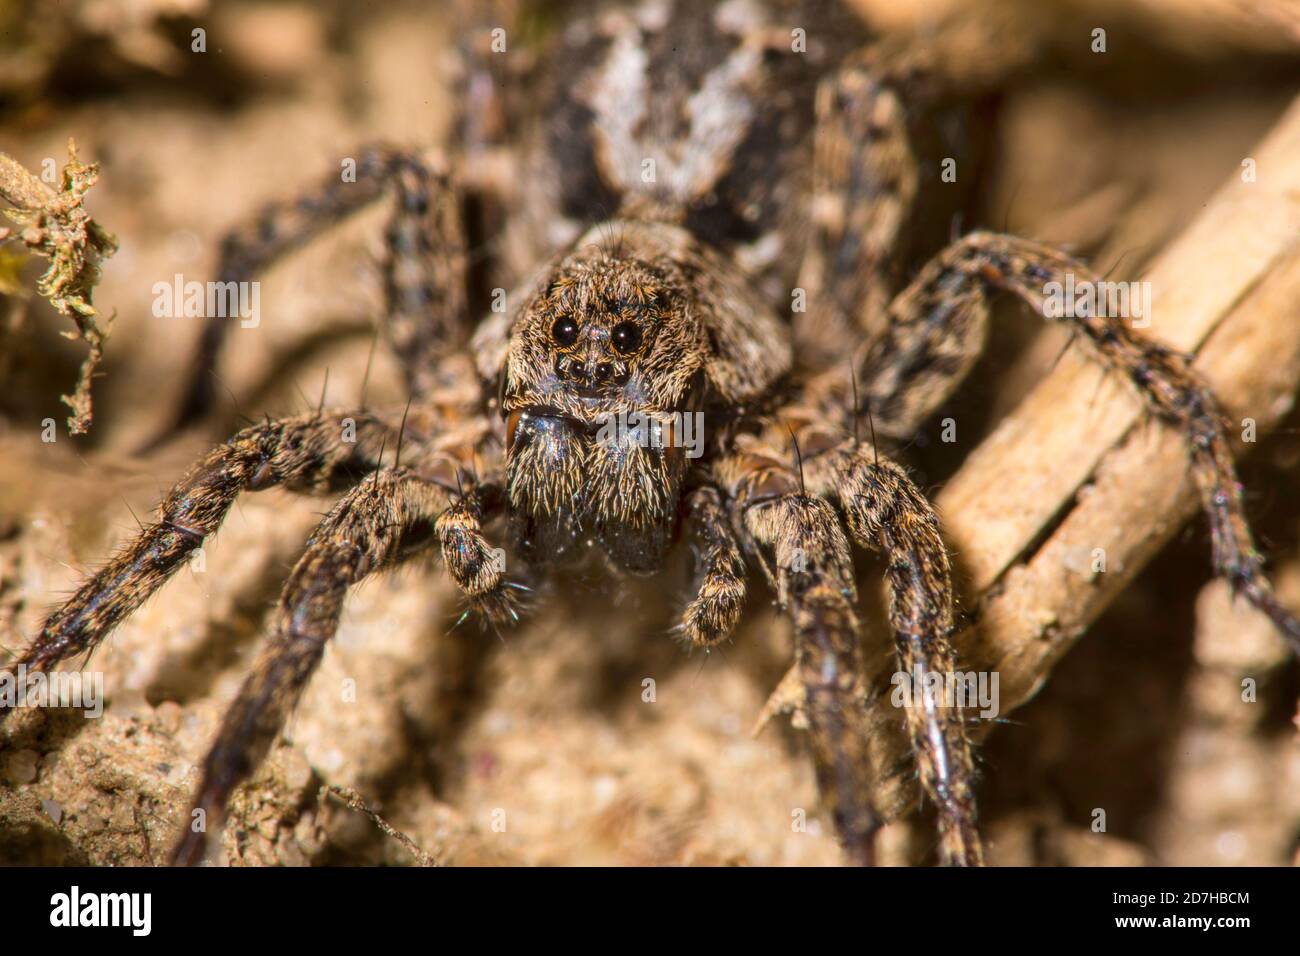 araignées de loup, araignées terrestres (Alopecosa farinosa), se trouve au sol, en Allemagne Banque D'Images